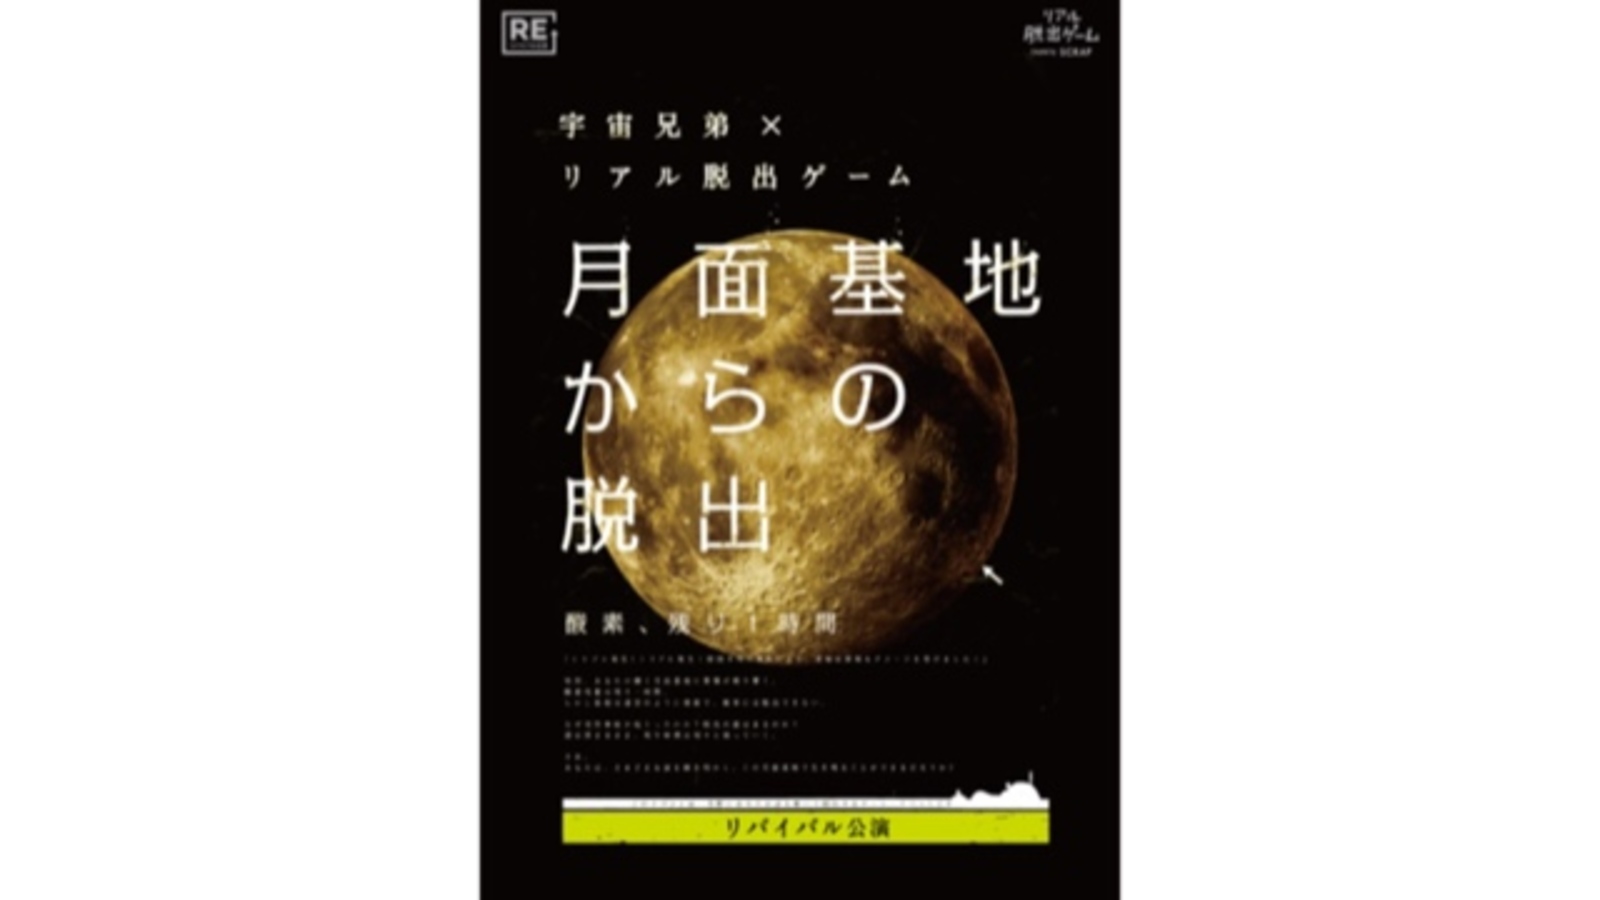 【新宿】宇宙兄弟×リアル脱出ゲーム『月面基地からの脱出』